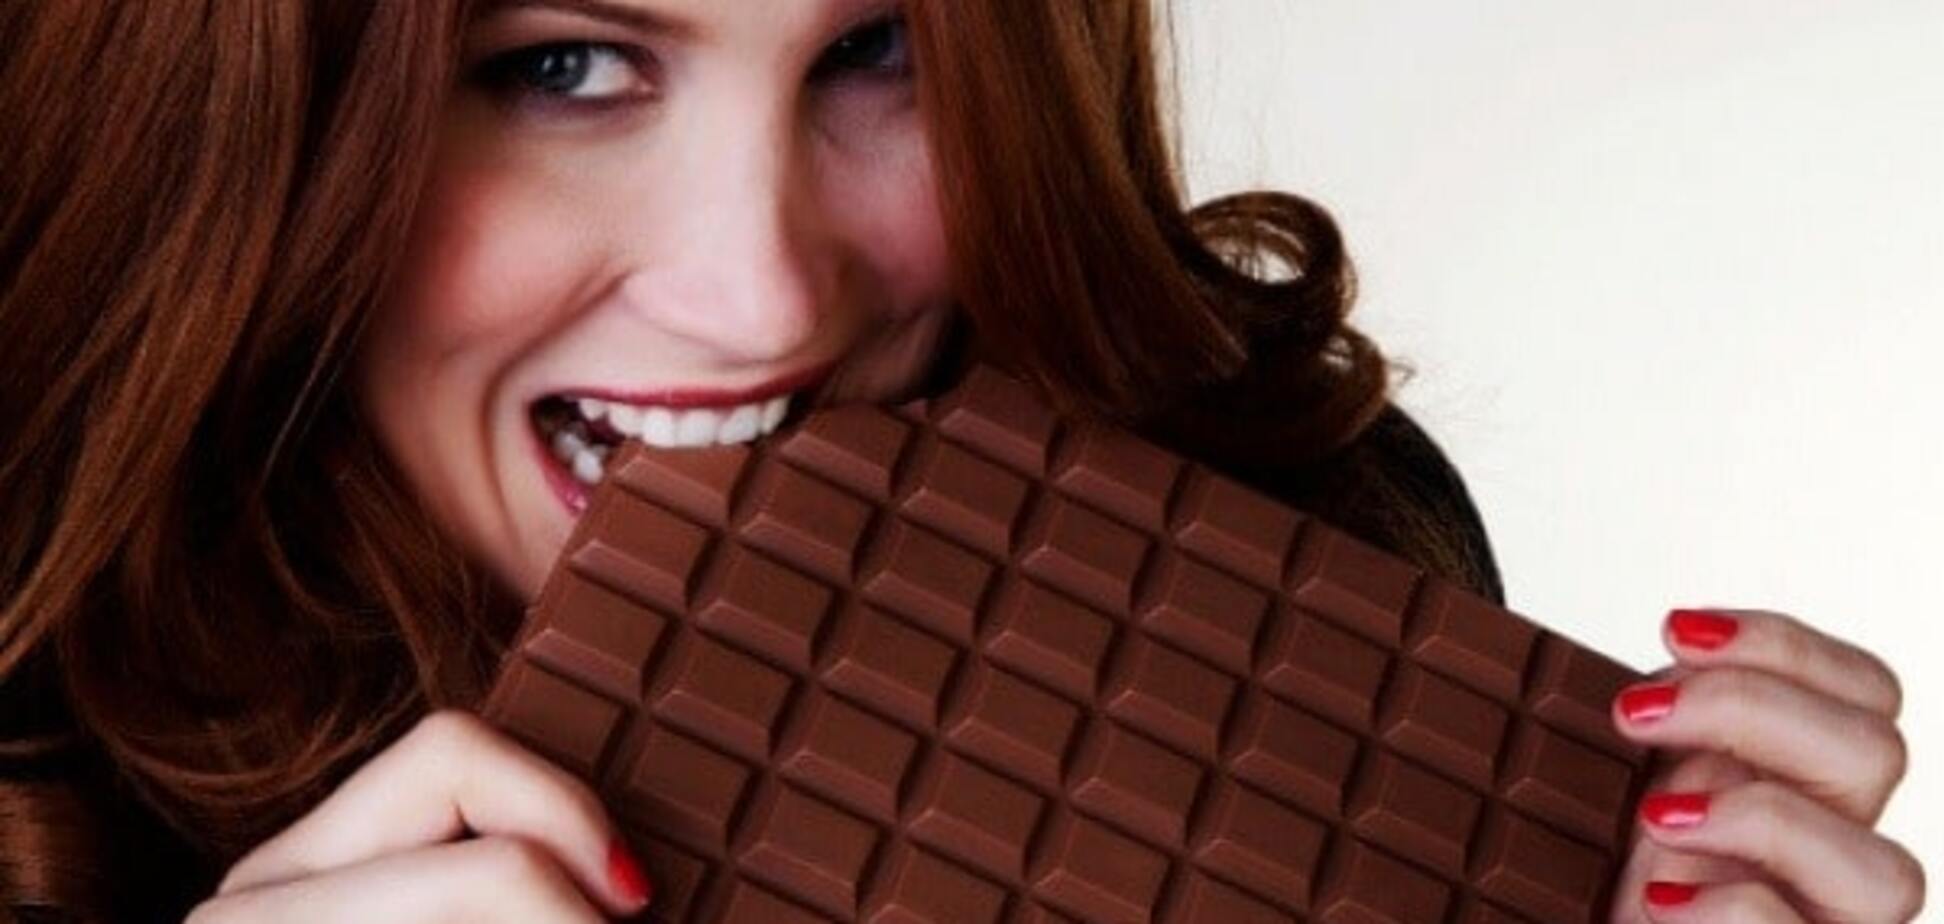 Шоколад приносит больше пользы, чем фрукты - ученые